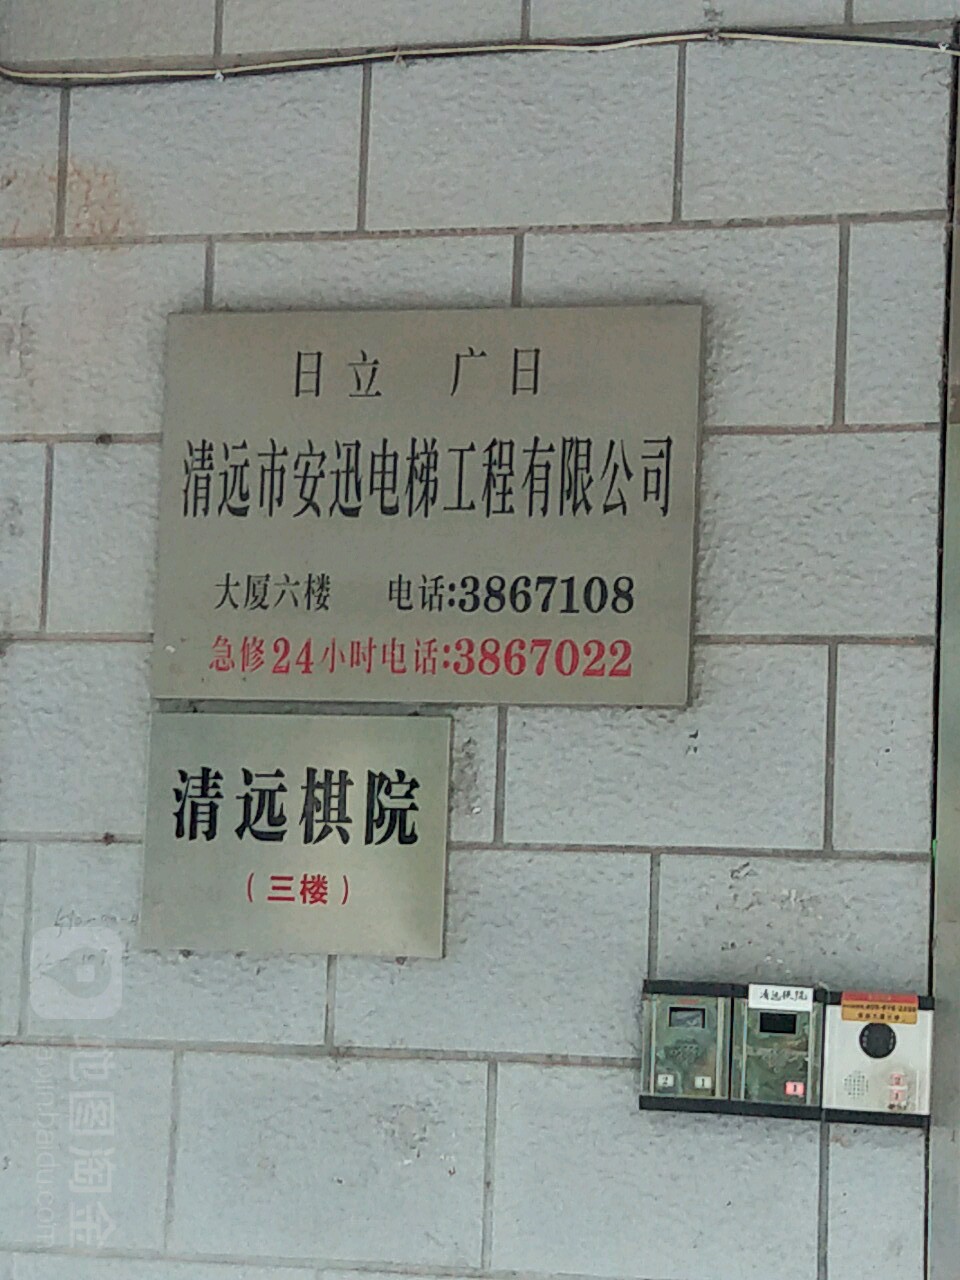 清远市安迅电梯工程有限公司